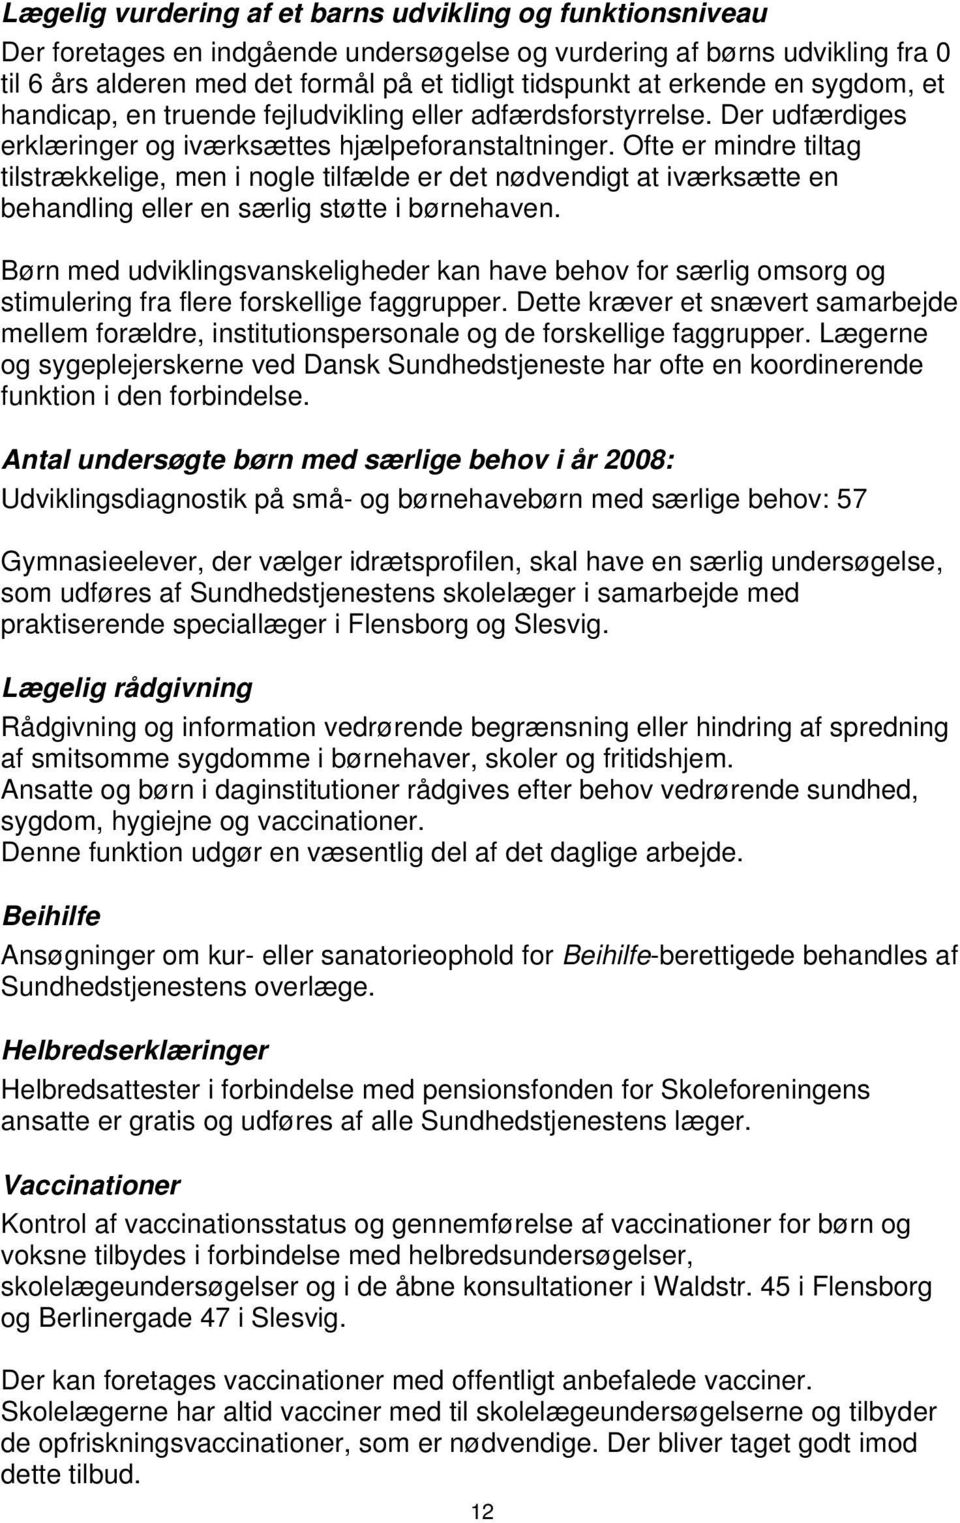 Sundhedstjeneste for Sydslesvig - PDF Download